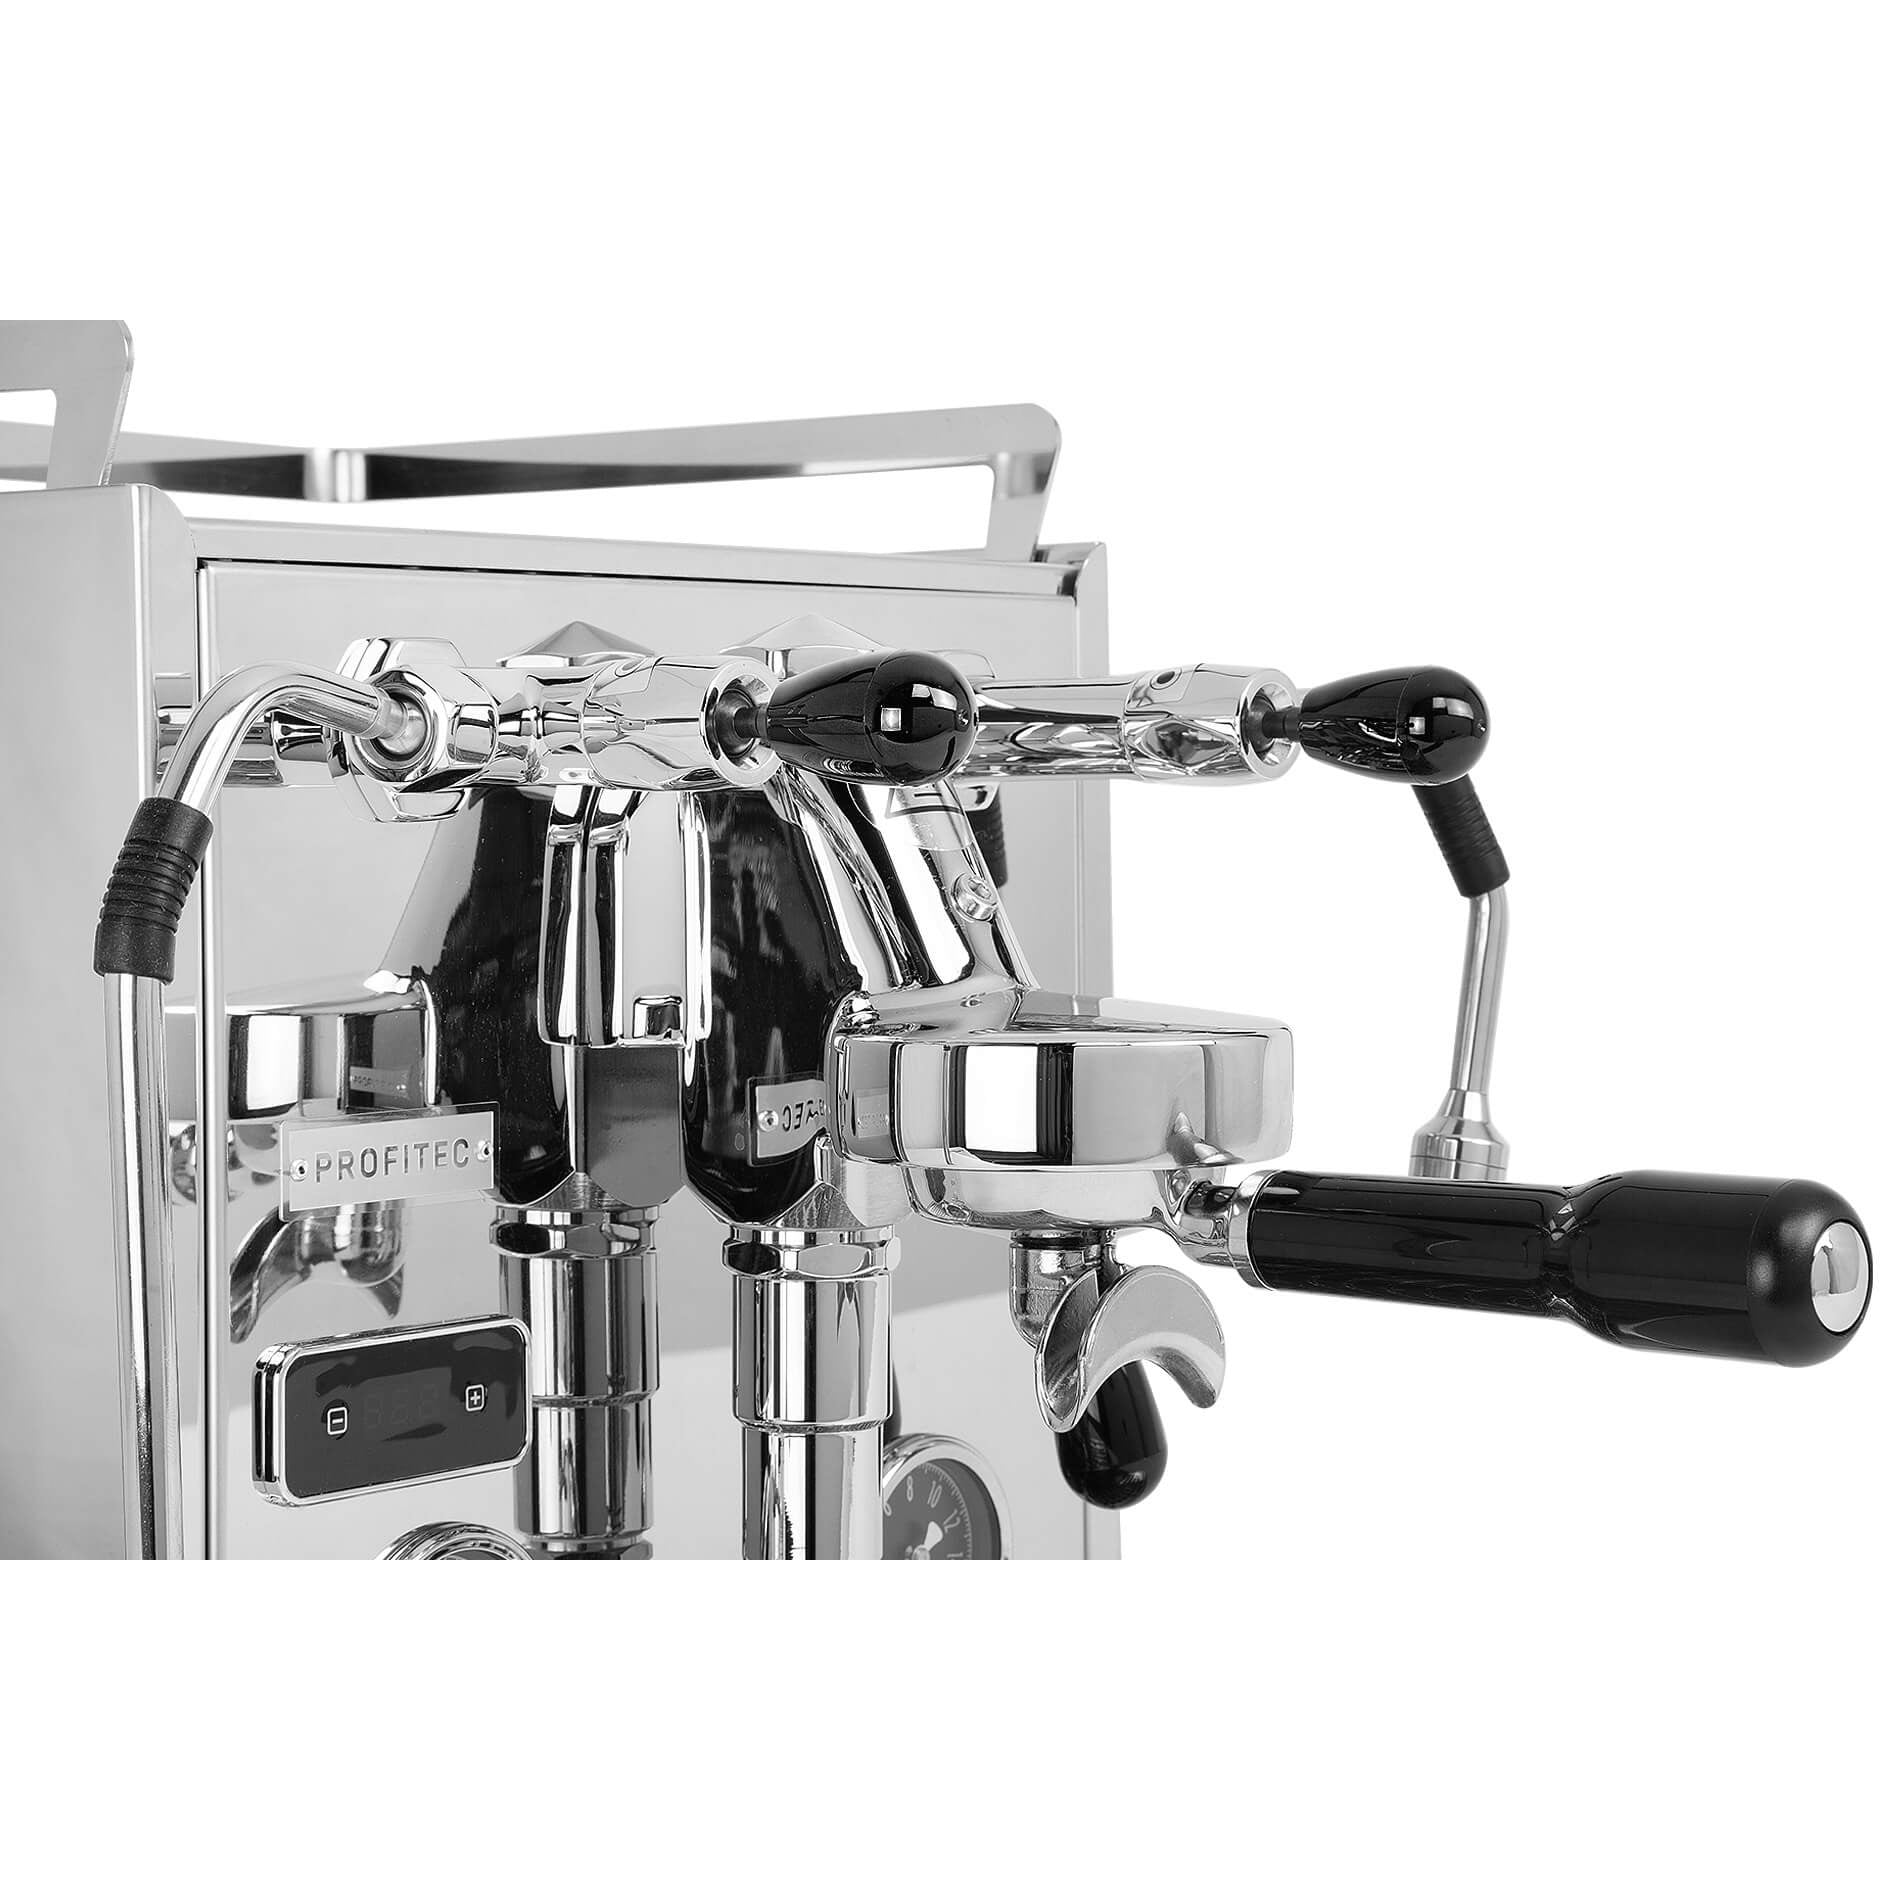 Profitec PRO 600 mit Kipphebeln DUALBOILER-SIEBTRÄGERMASCHINE MIT PID-STEUERUNG Espressomaschinen Profitec    - Rheinland.Coffee